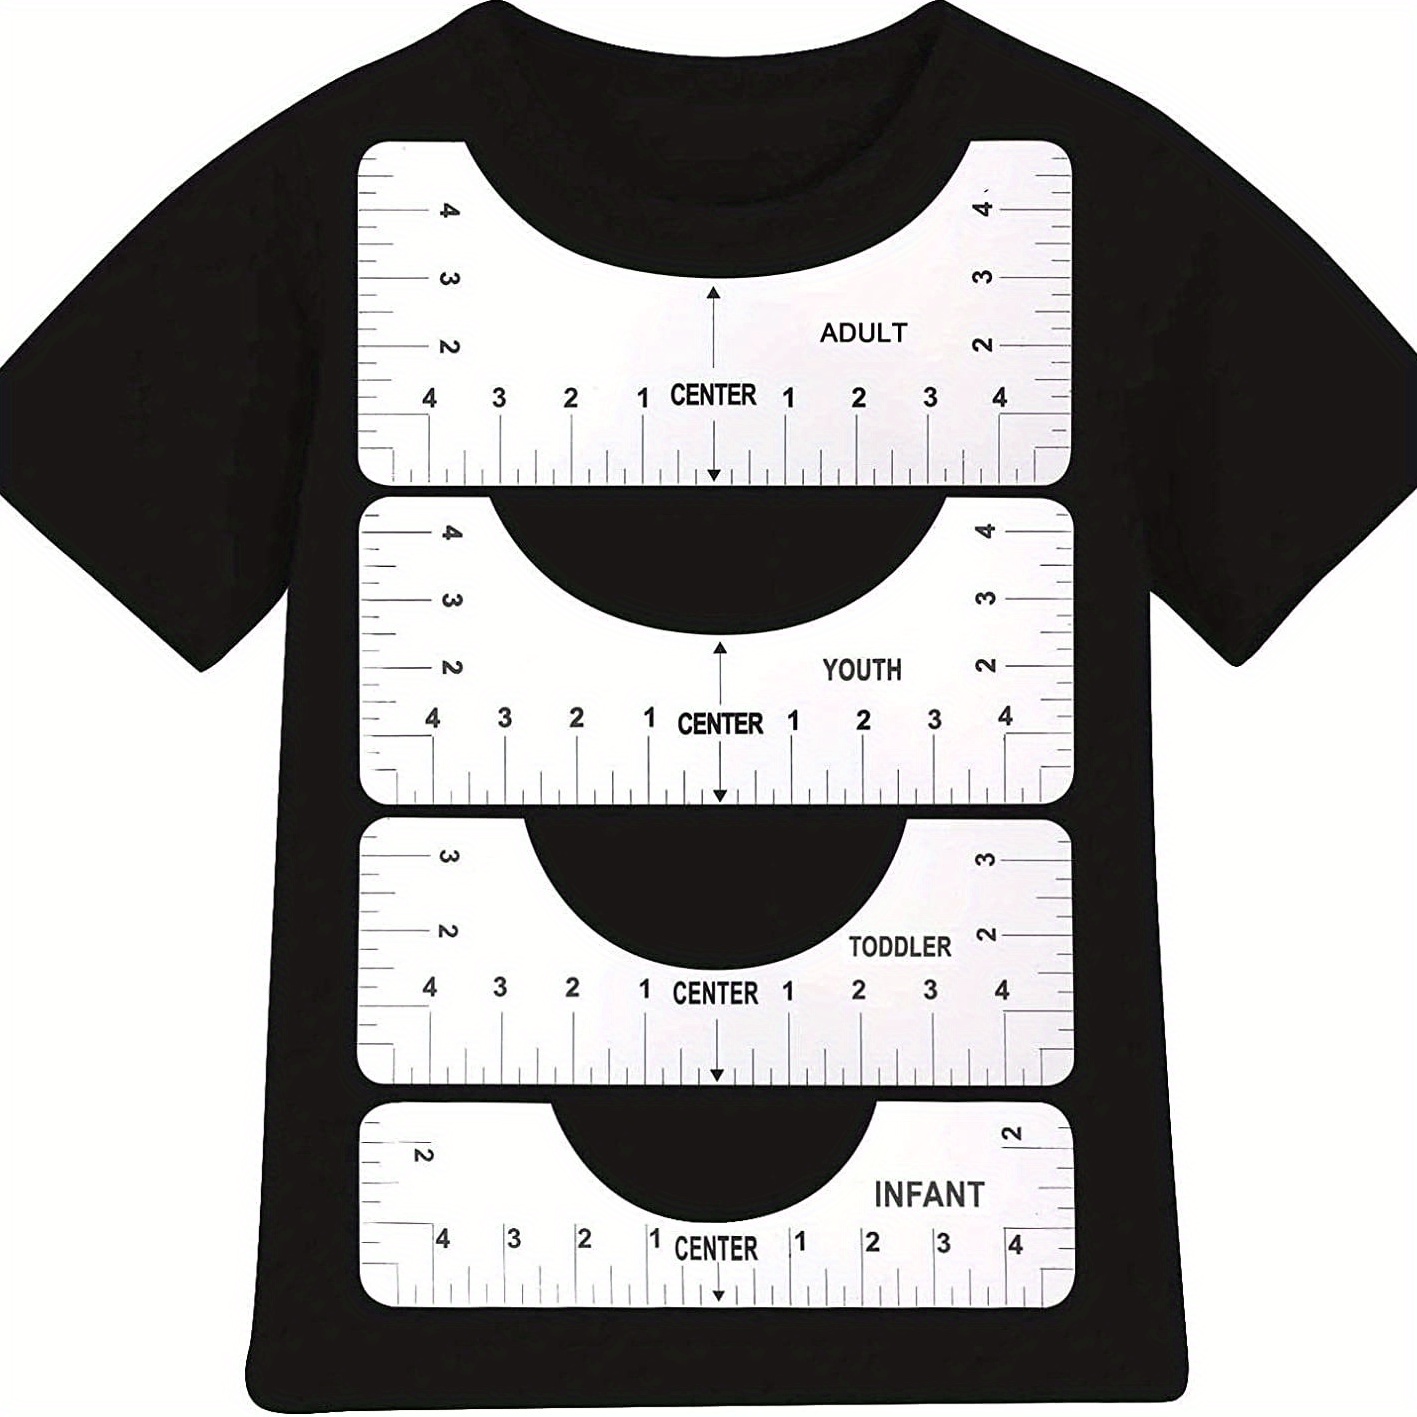 Tshirt Ruler Guide For Vinyl Alignment T Shirt Rulers - Temu